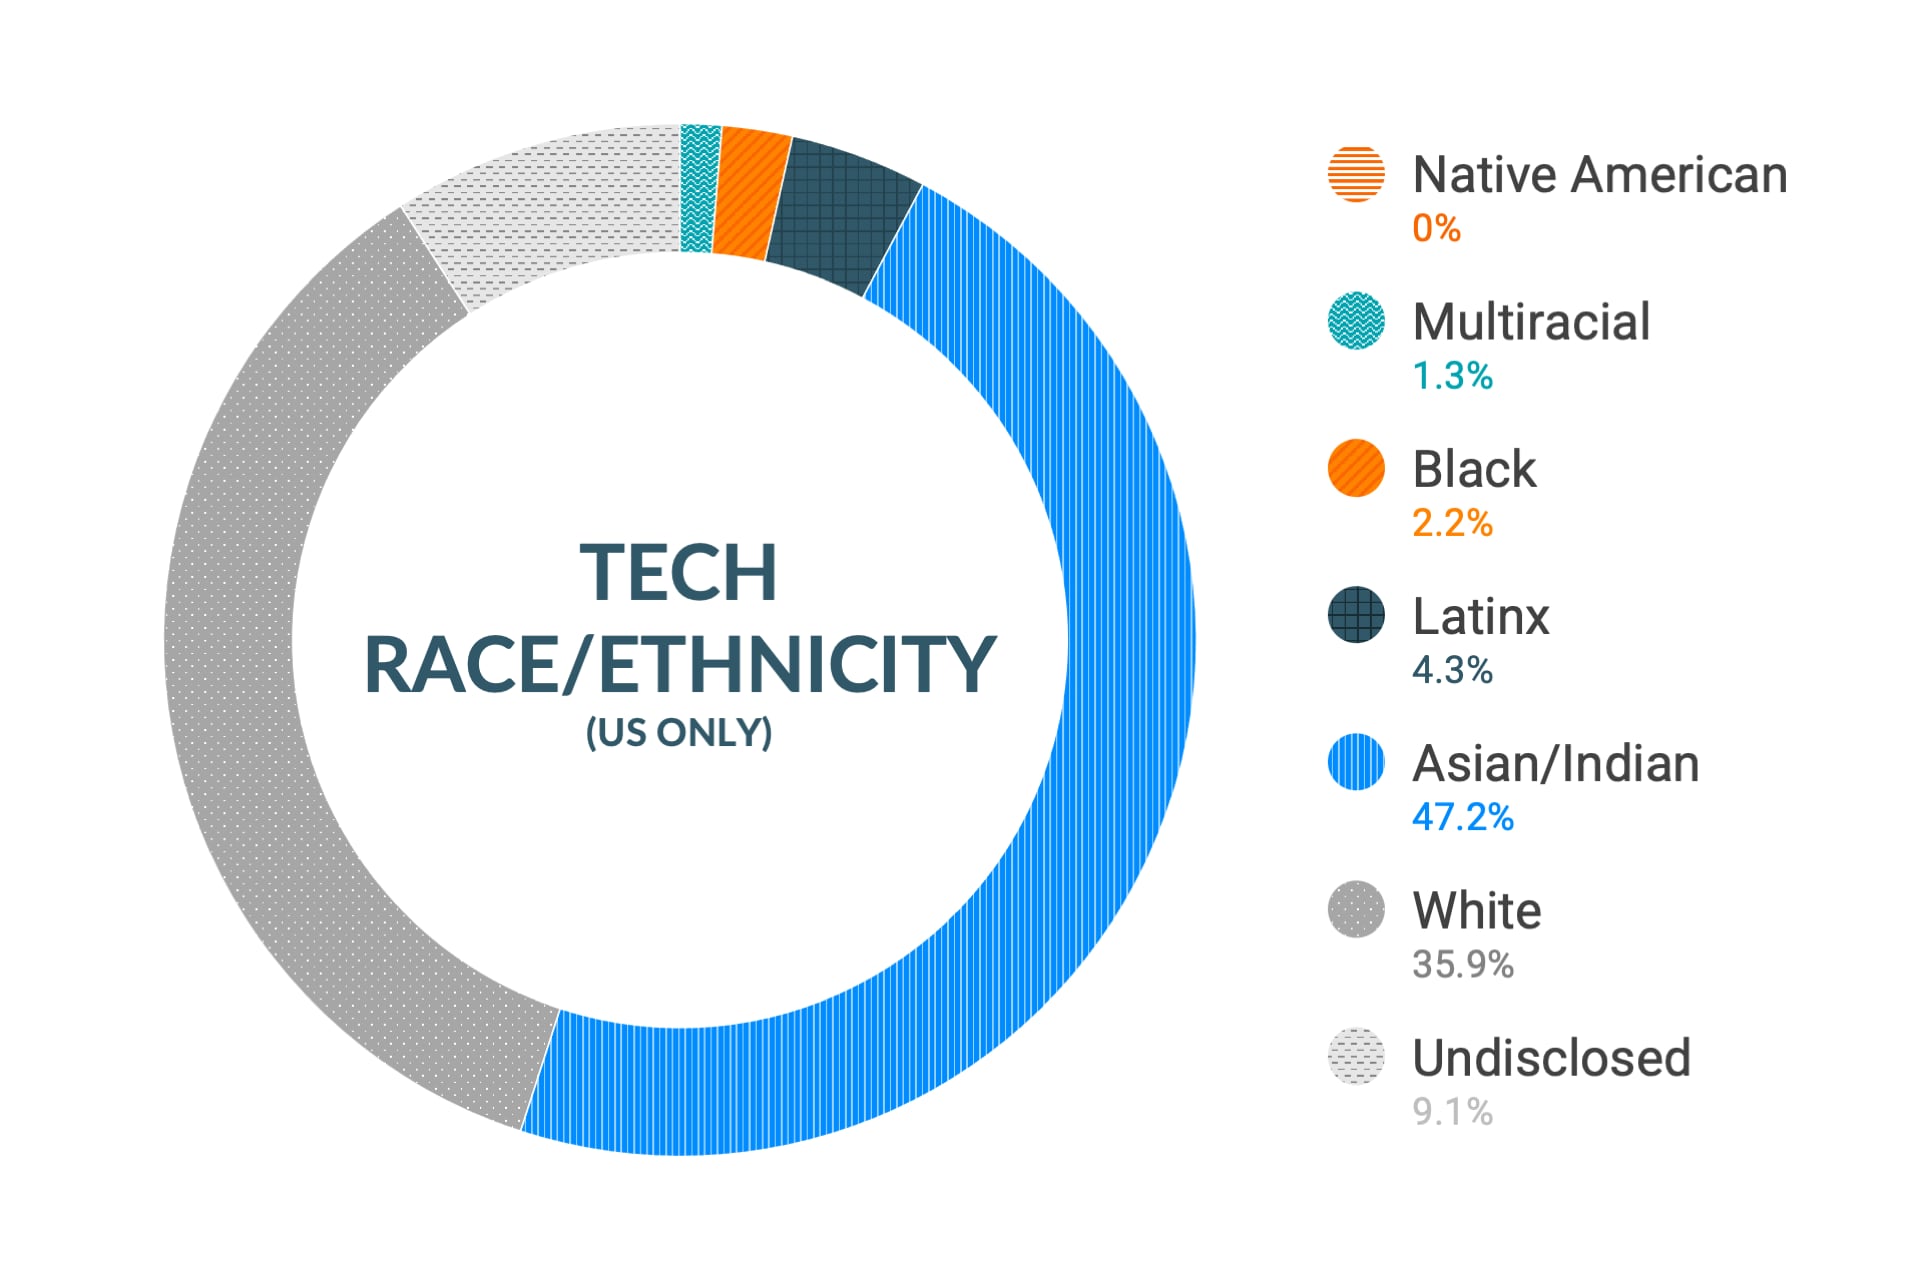 미국 지역 기술 역할 내 인종 및 민족에 대한 Cloudera의 다양성 및 포용력 데이터: 아메리카 원주민 0.4%, 다인종 1.1%, 흑인 2.1%, 라틴계 1.4%, 아시아인 및 인도인 45.5%, 백인 25.9%, 비공개 23.6%